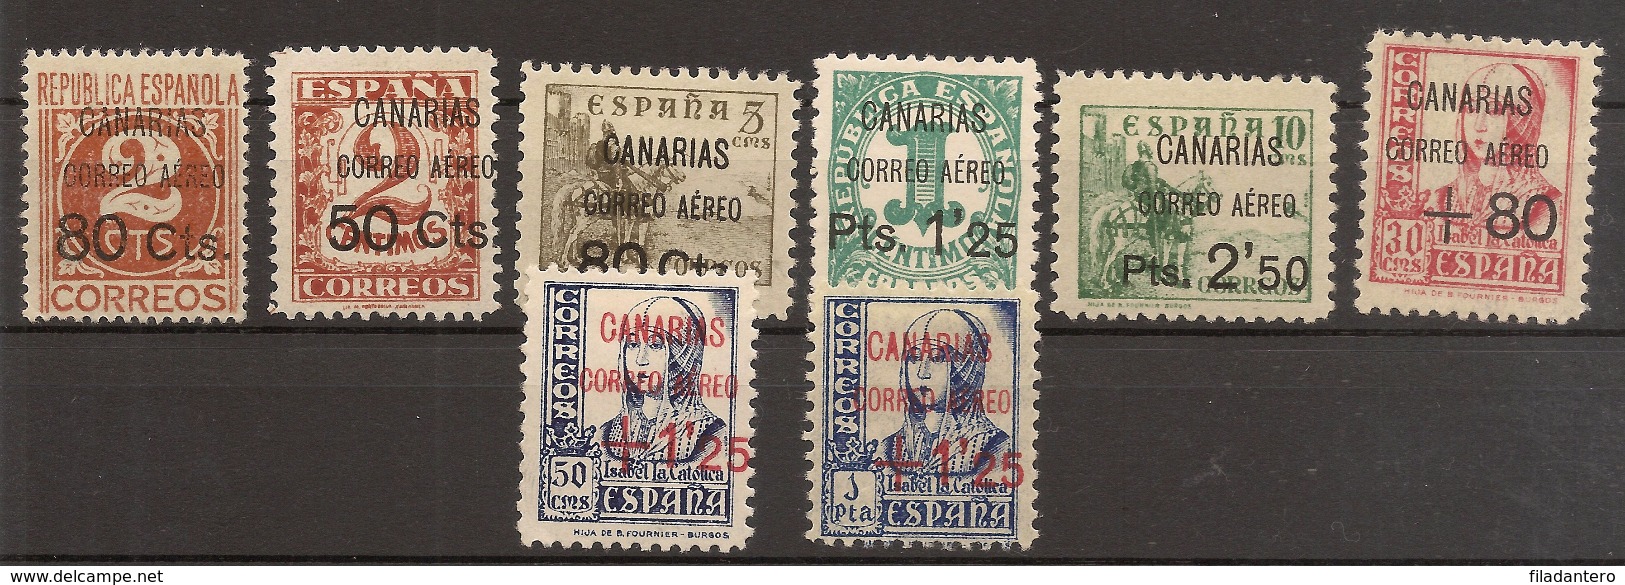 CANARIAS  Edifil  Especializado   23/30* MH   1937   Serie Completa   NL1149 - Emisiones Nacionalistas